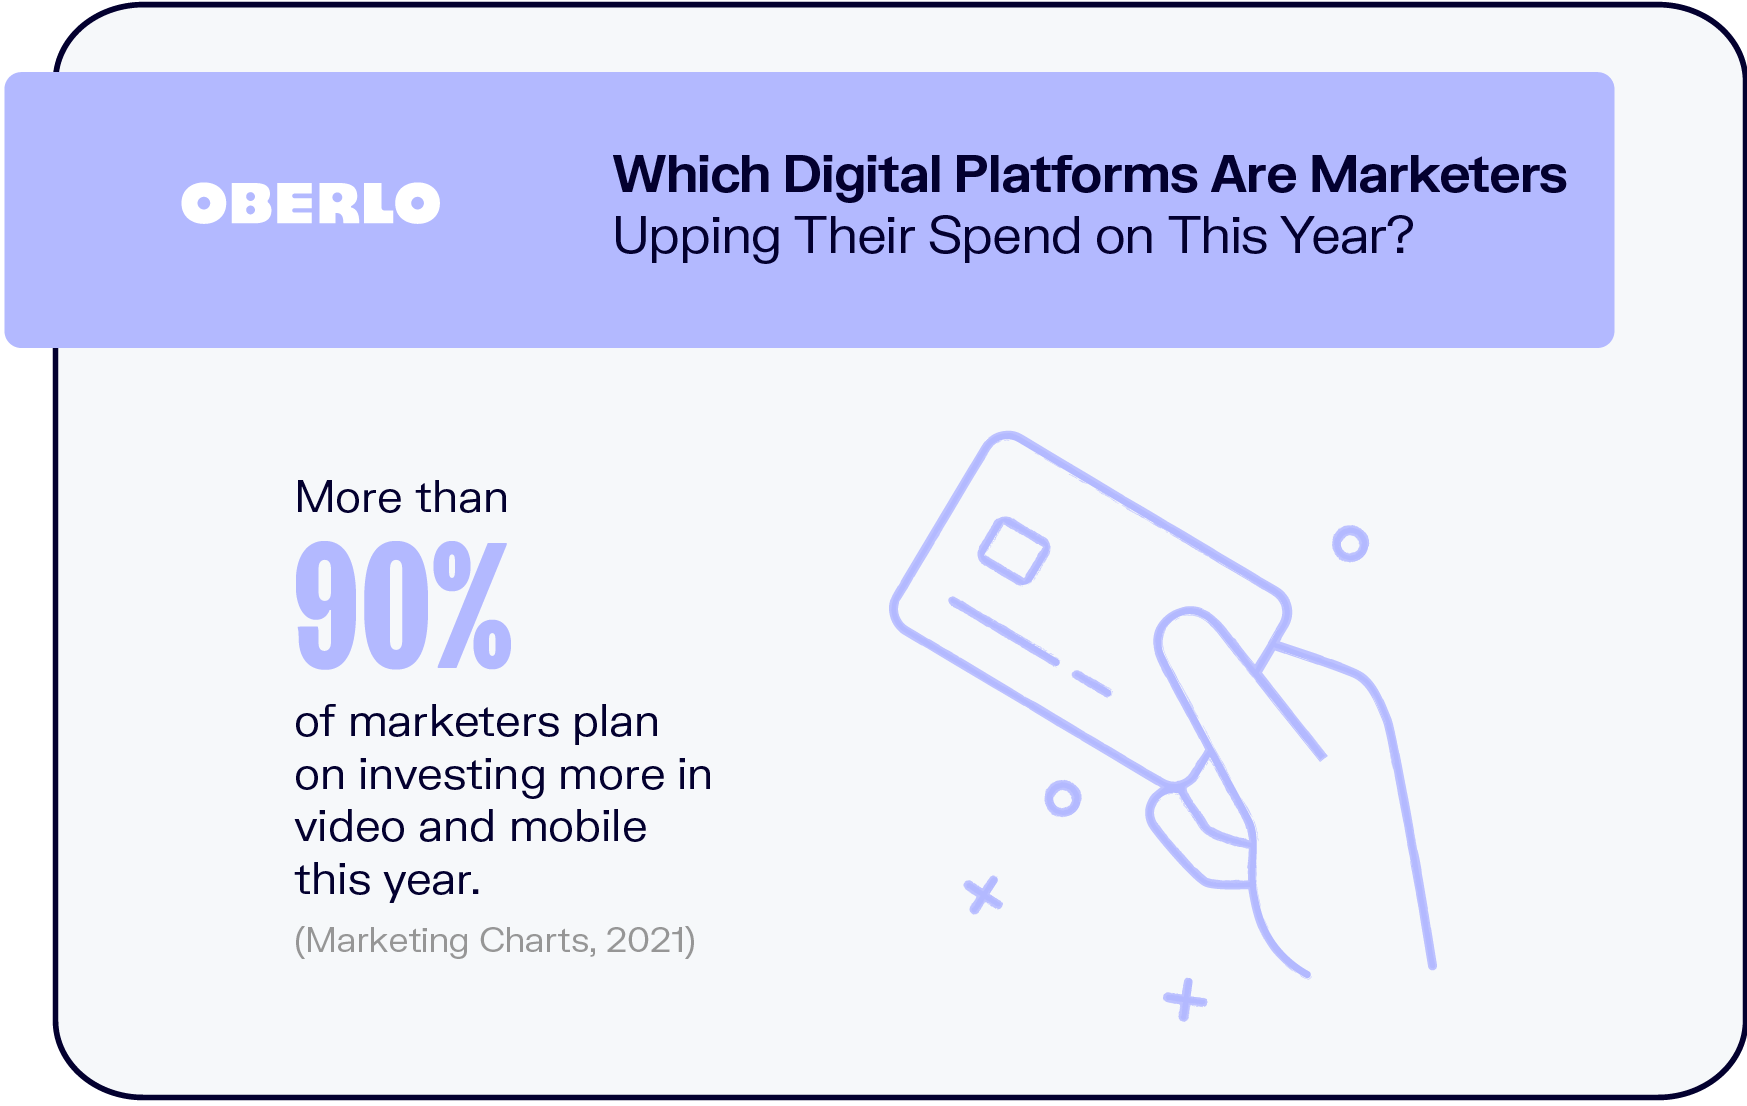 ¿En qué plataformas digitales los especialistas en marketing están aumentando su gasto este año?